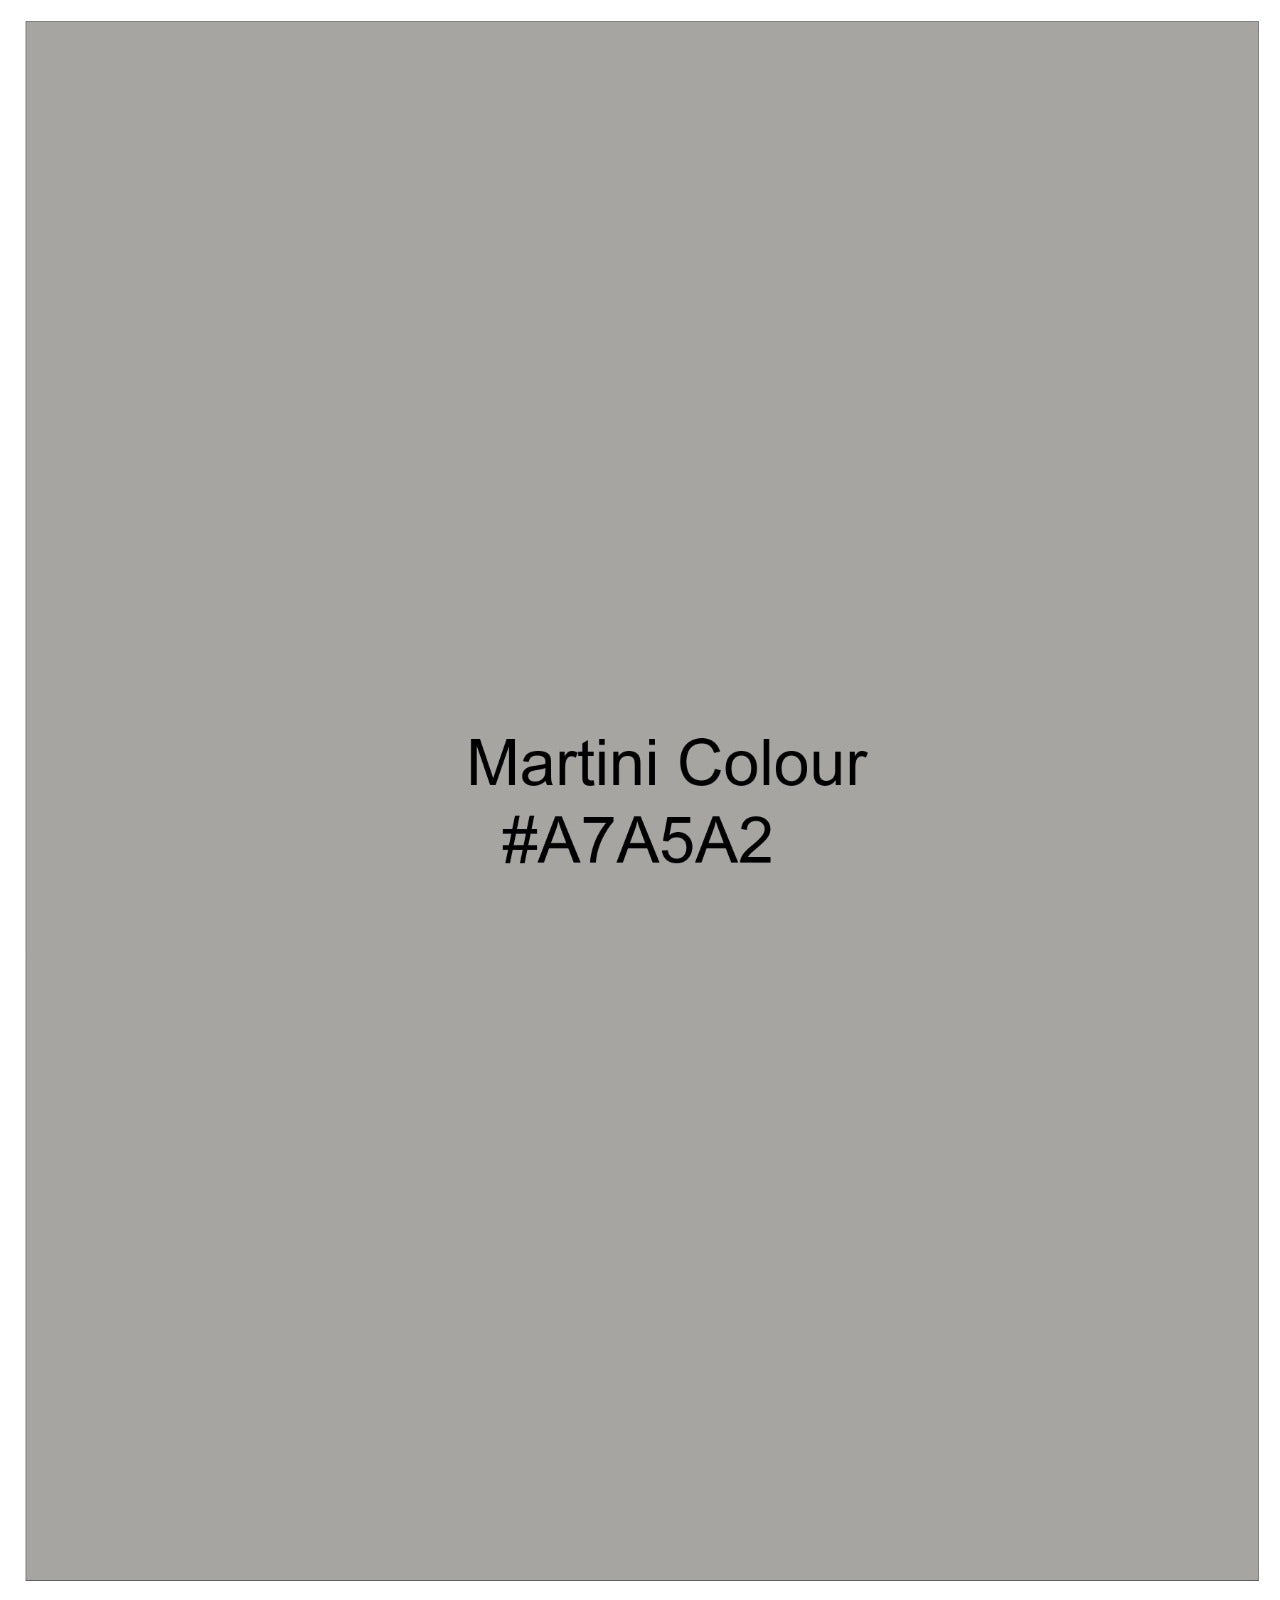 Martini Gray Bandhgala Premium Cotton Stretchable traveler Suit ST2669-BG-36,ST2669-BG-38,ST2669-BG-40,ST2669-BG-42,ST2669-BG-44,ST2669-BG-46,ST2669-BG-48,ST2669-BG-50,ST2669-BG-52,ST2669-BG-54,ST2669-BG-56,ST2669-BG-58,ST2669-BG-60